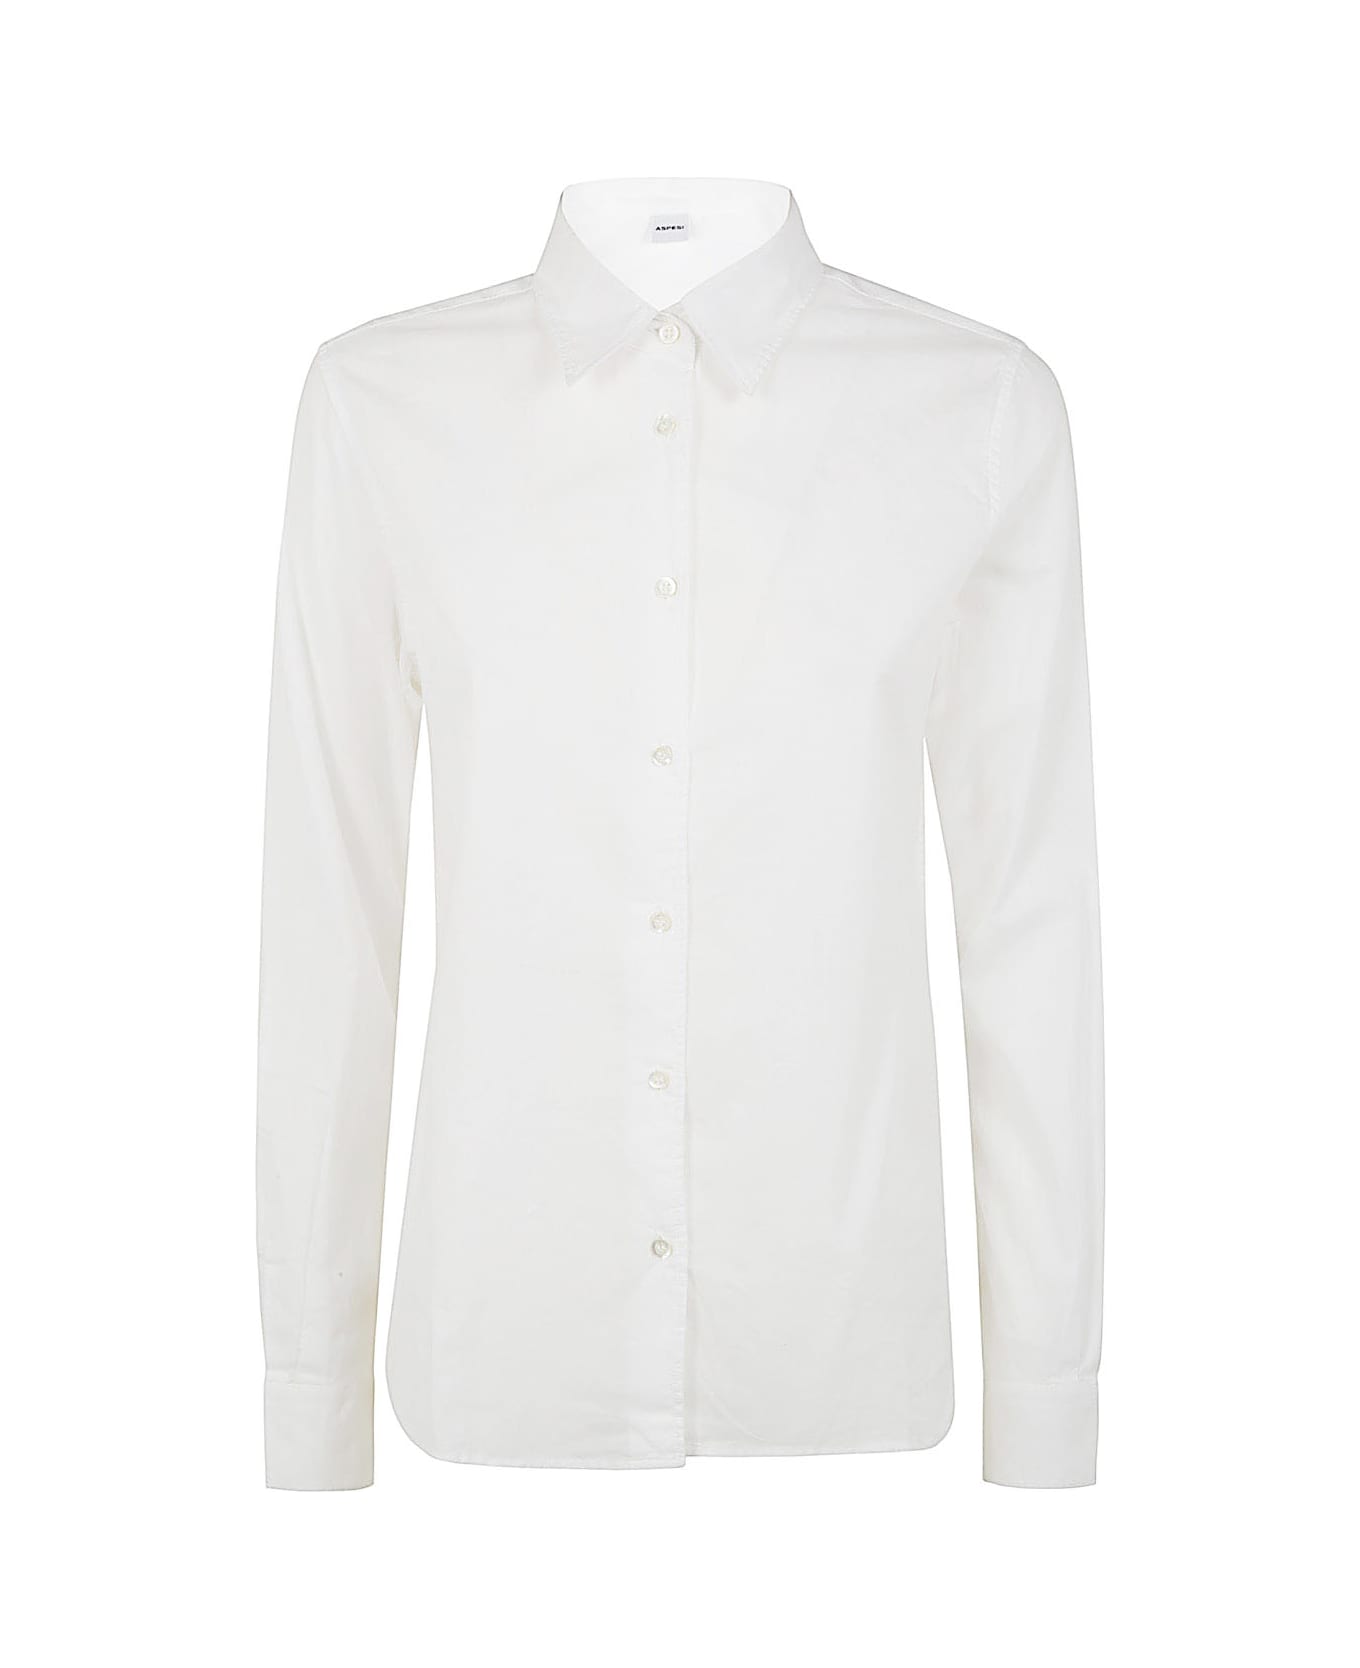 Aspesi Mod 5422 Shirt - White シャツ